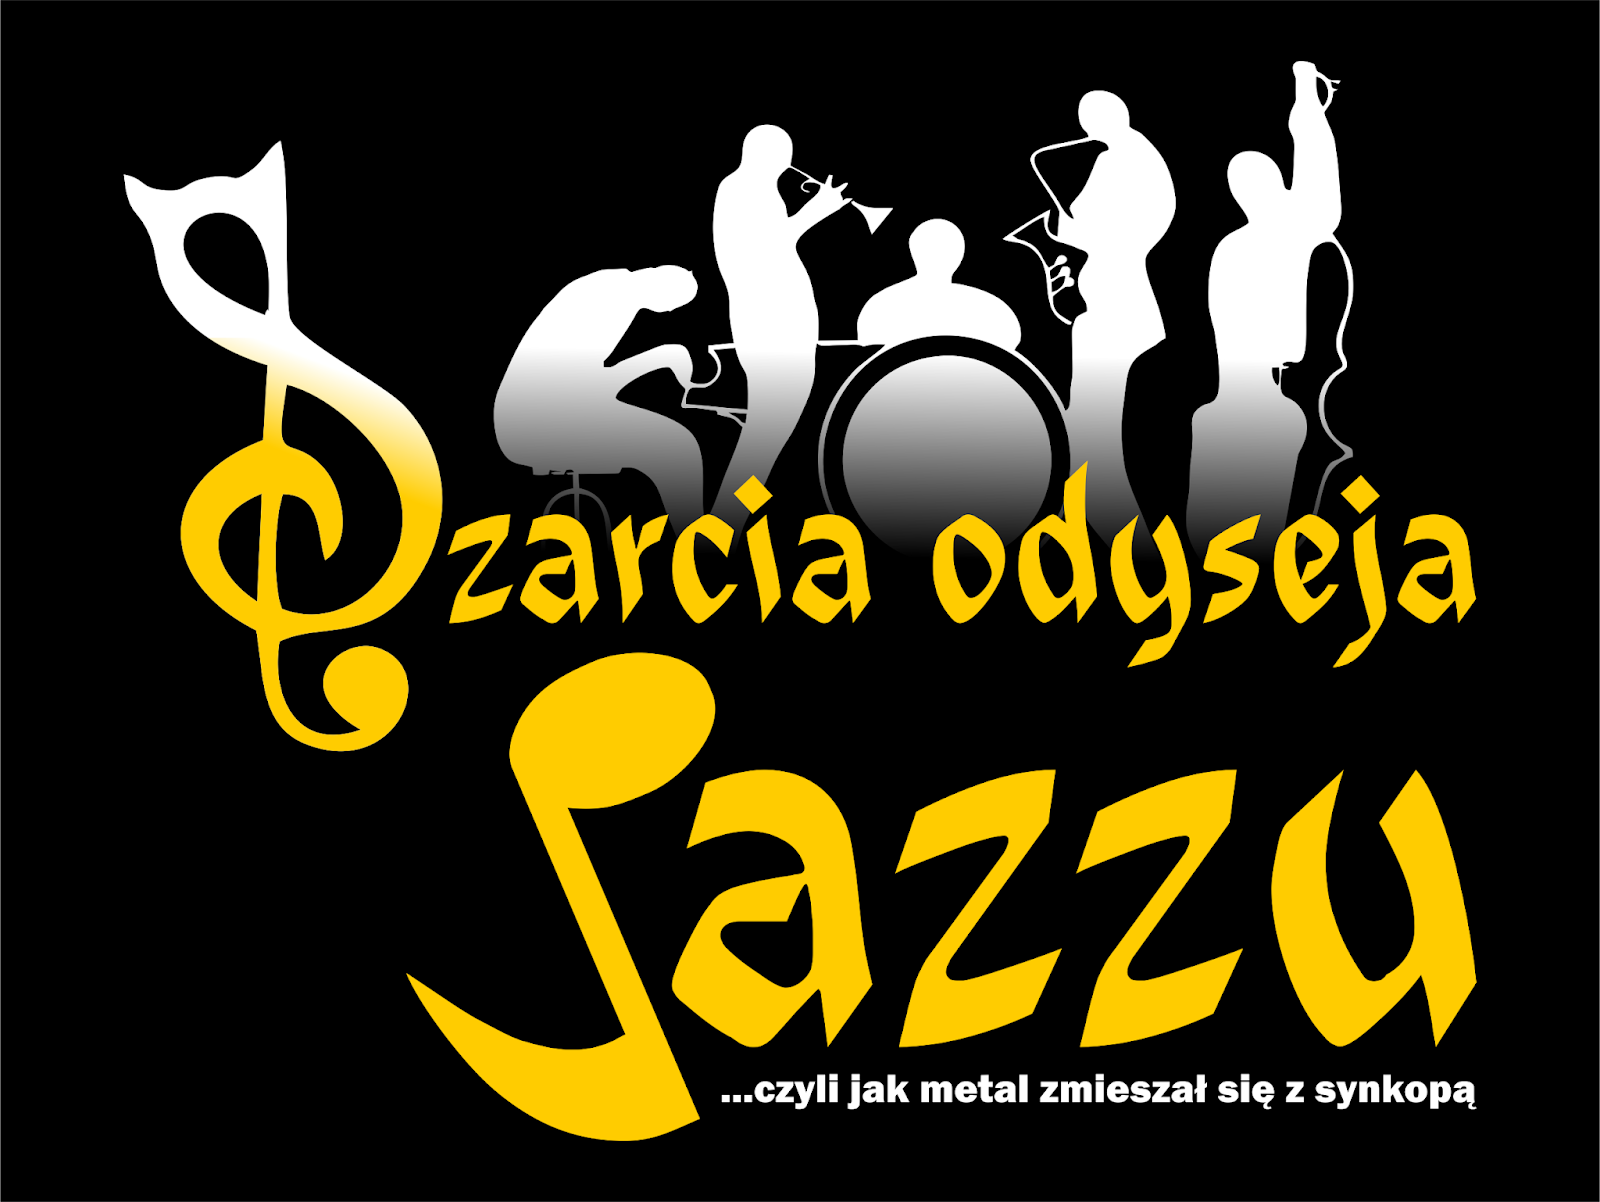 Czarcia odyseja jazzu - Nieodwracalne zmiany - cz. I/IV